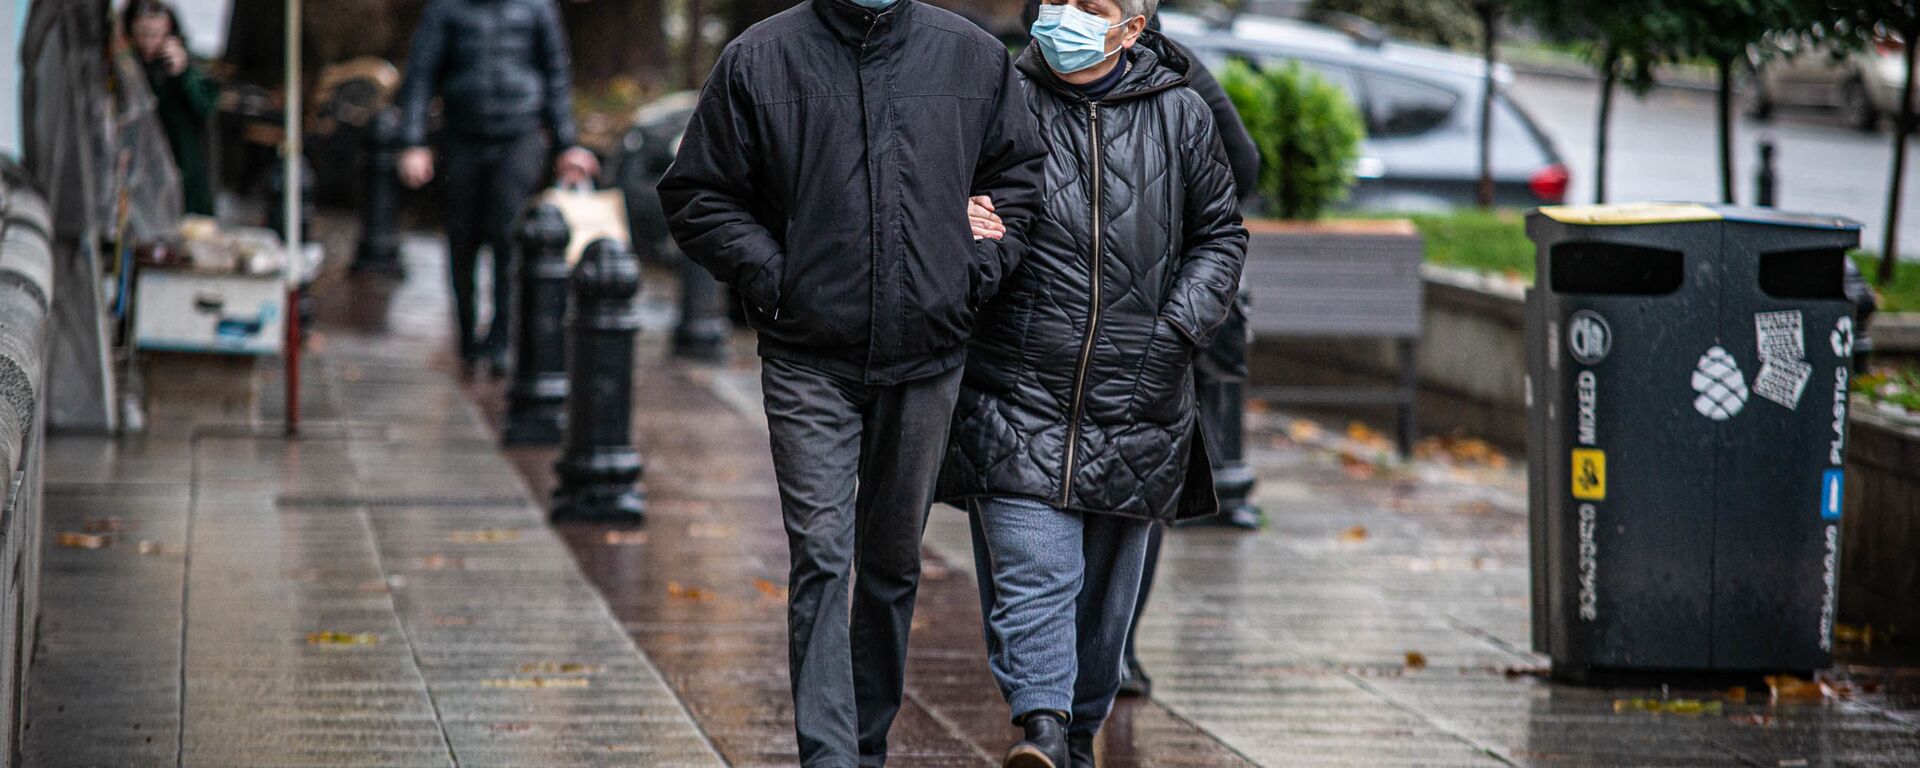 Эпидемия коронавируса - прохожие в масках на улицах грузинской столицы в дождь - Sputnik Грузия, 1920, 31.01.2021